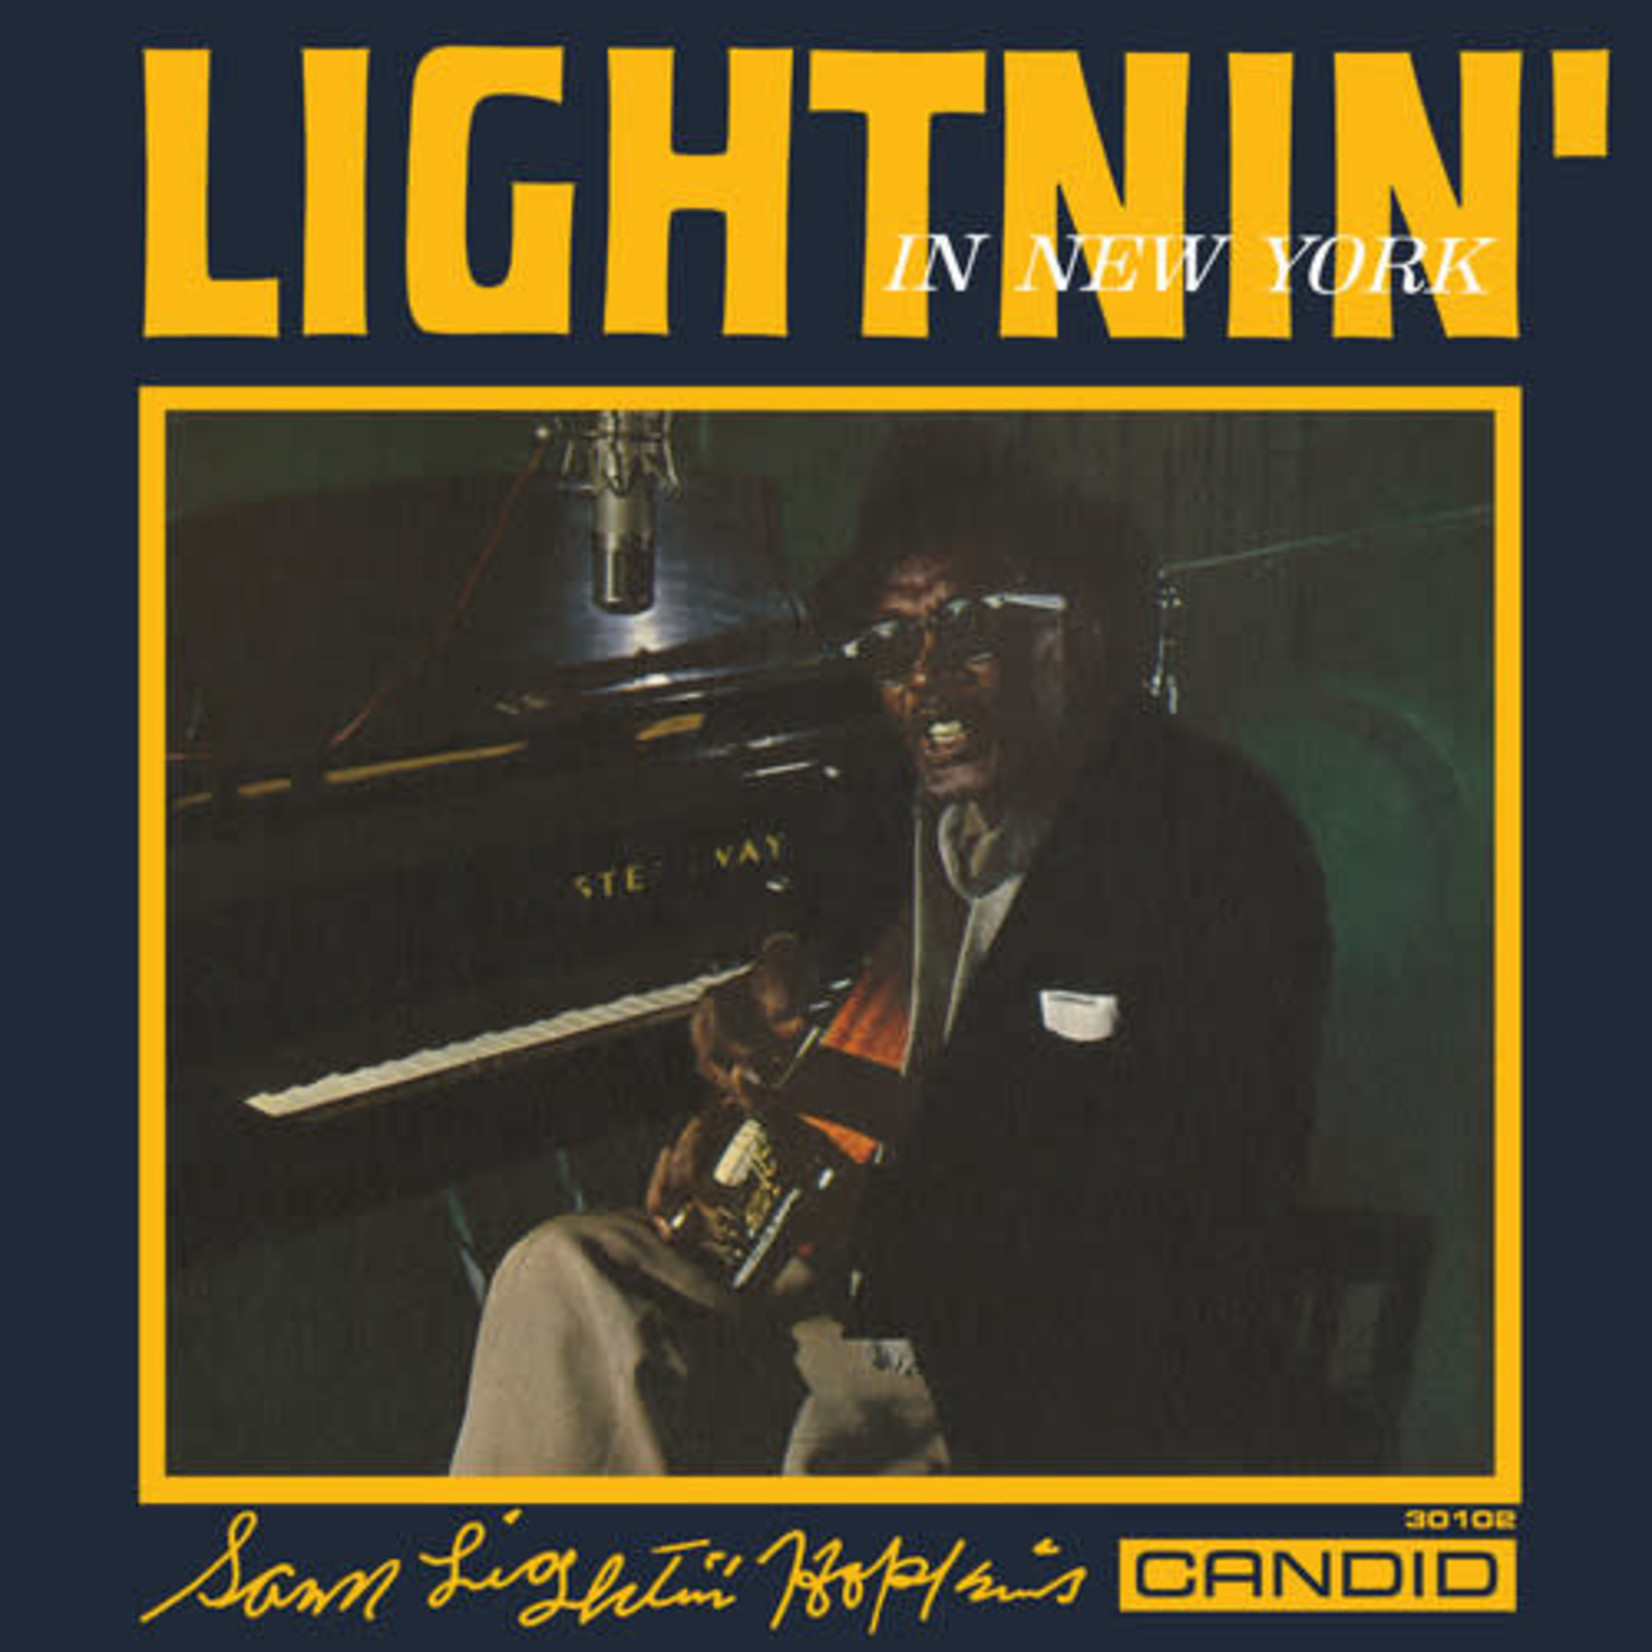 Lightnin Hopkins - Lightnin in New York (LP)